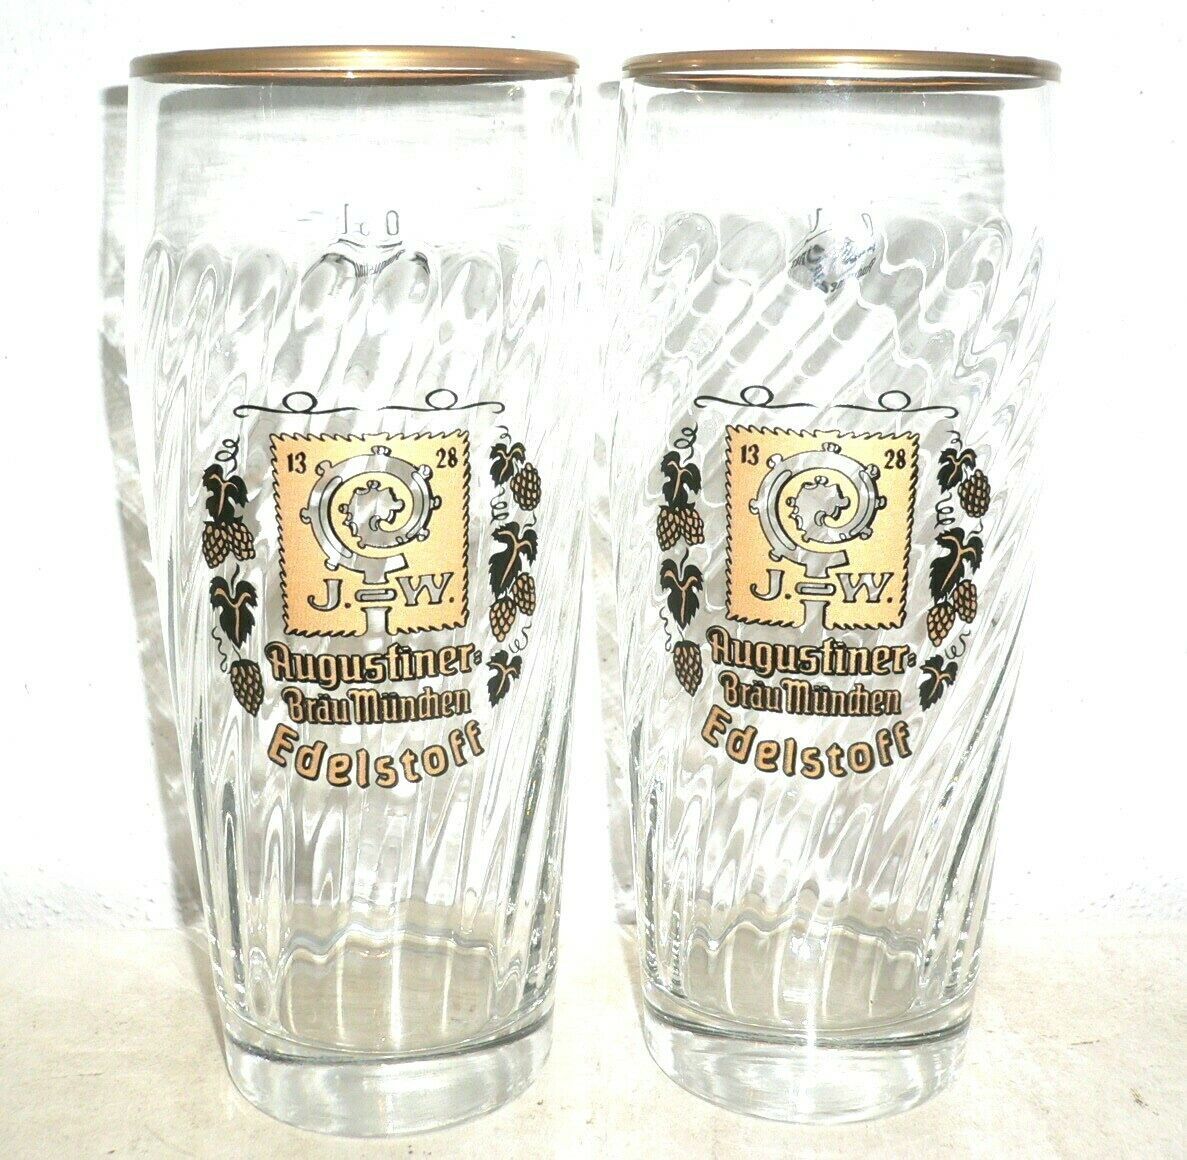 2 Brauerei Augustiner Brau Edelstoff Munich 0.5L German Beer Glasses NEW Germany